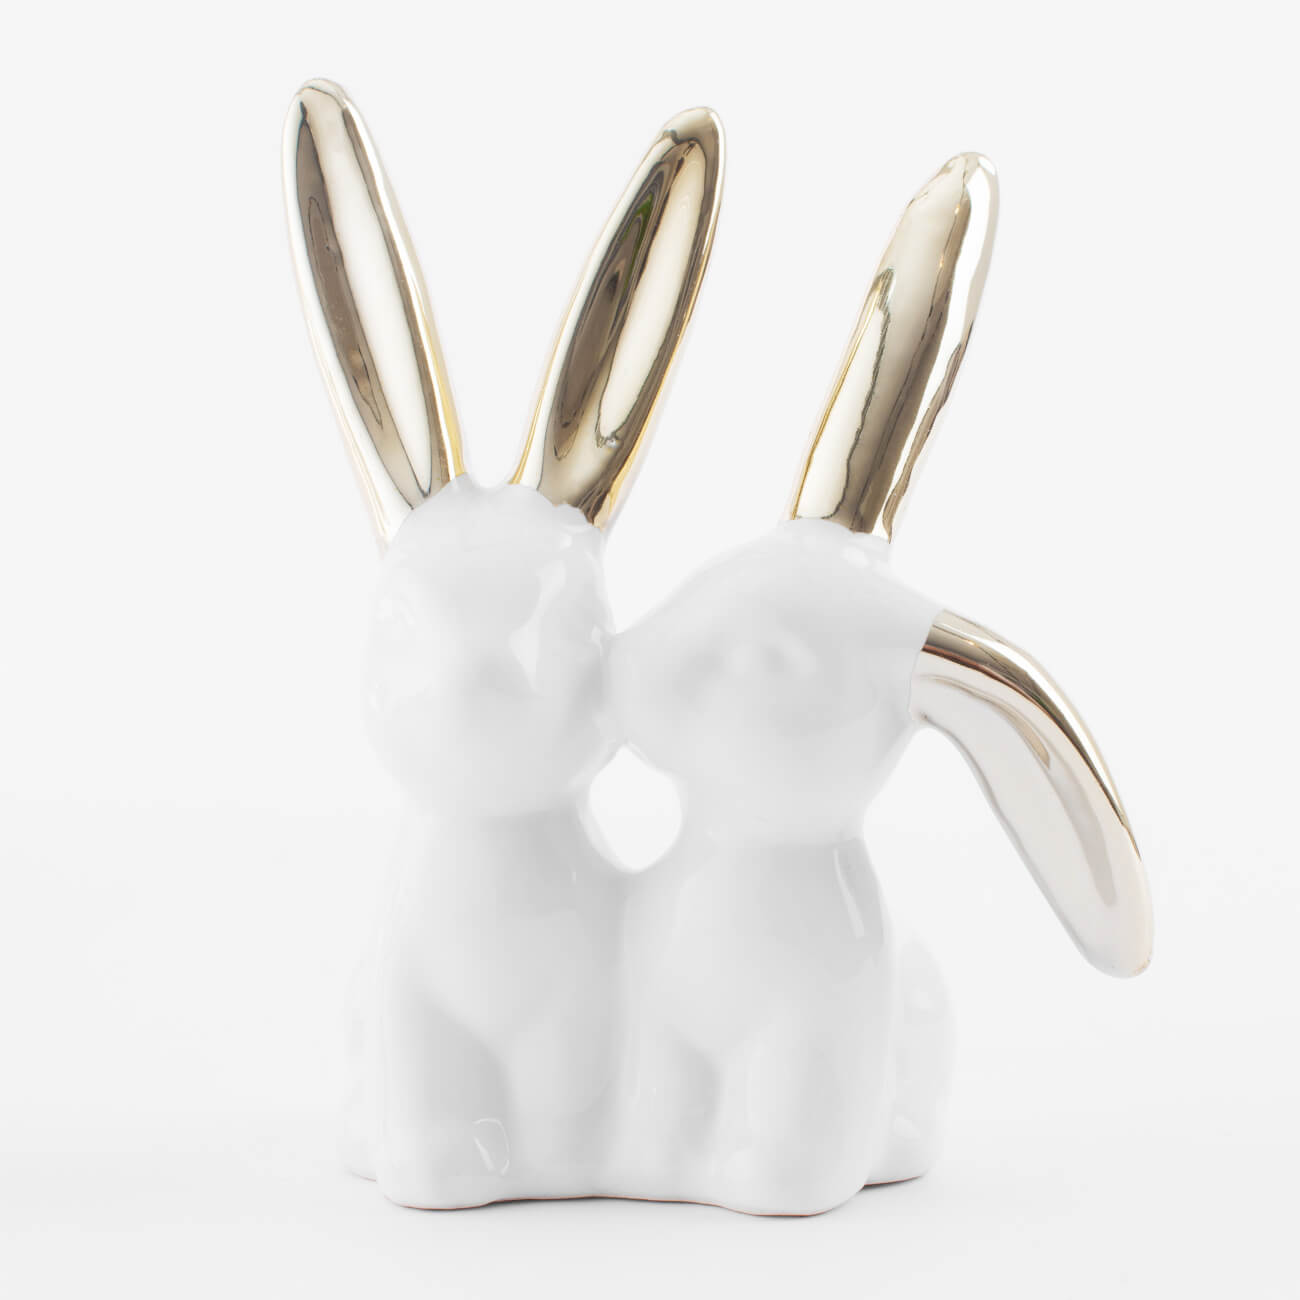 емкость для хранения 15х14 см 390 мл керамика белая кролики easter gold Держатель для украшений, 11 см, керамика, бело-золотистый, Кролики, Easter gold